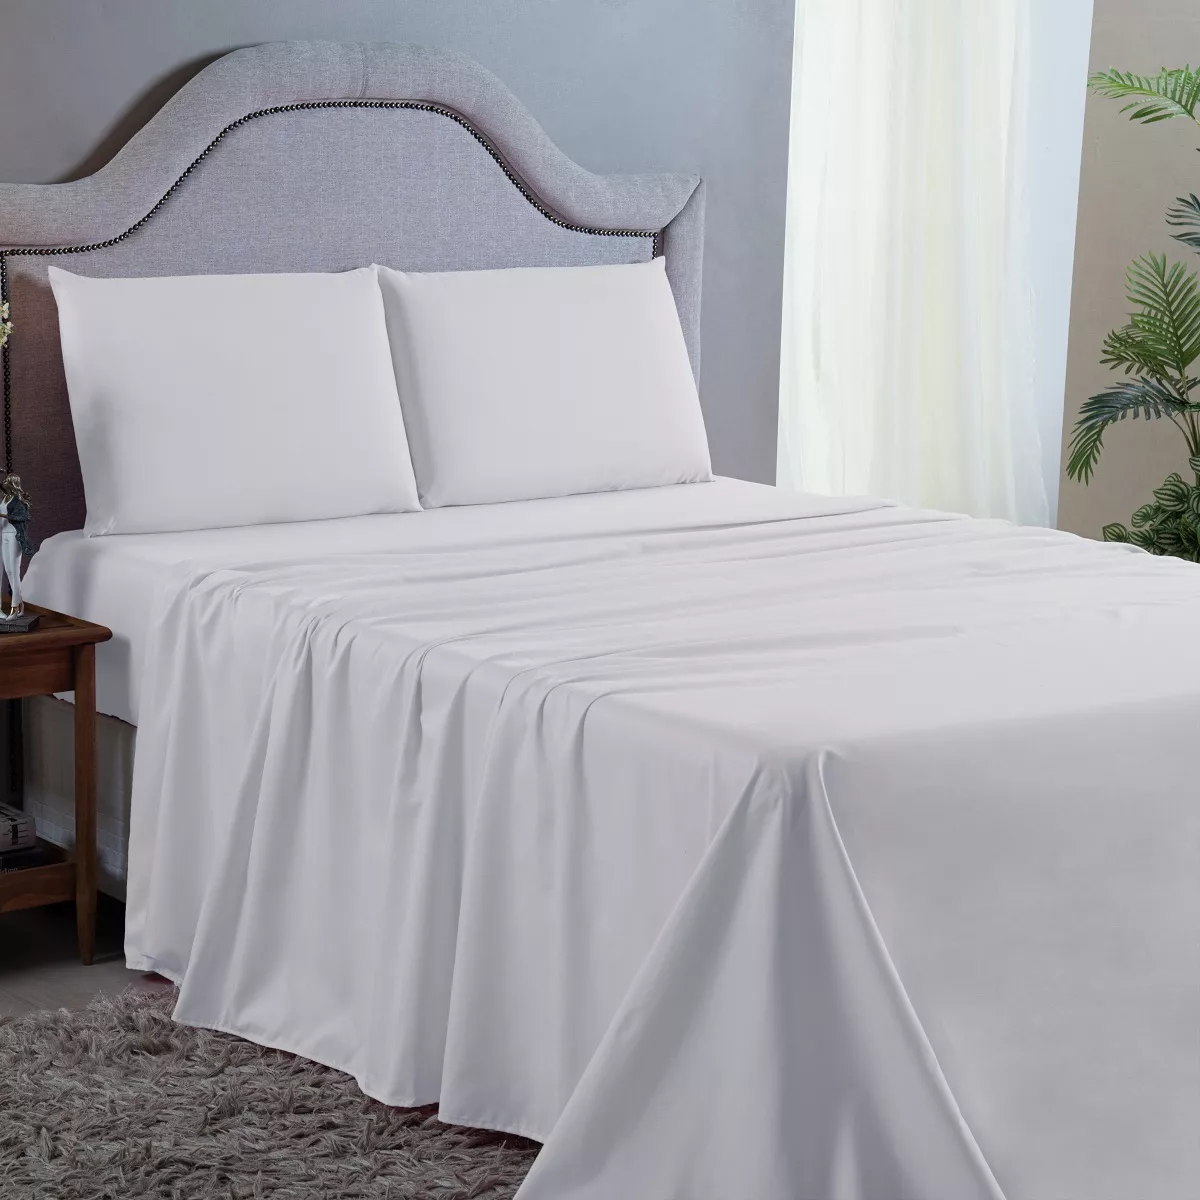 Segunda imagem para pesquisa de lojas pernambucanas roupa de cama lencol king size quarto